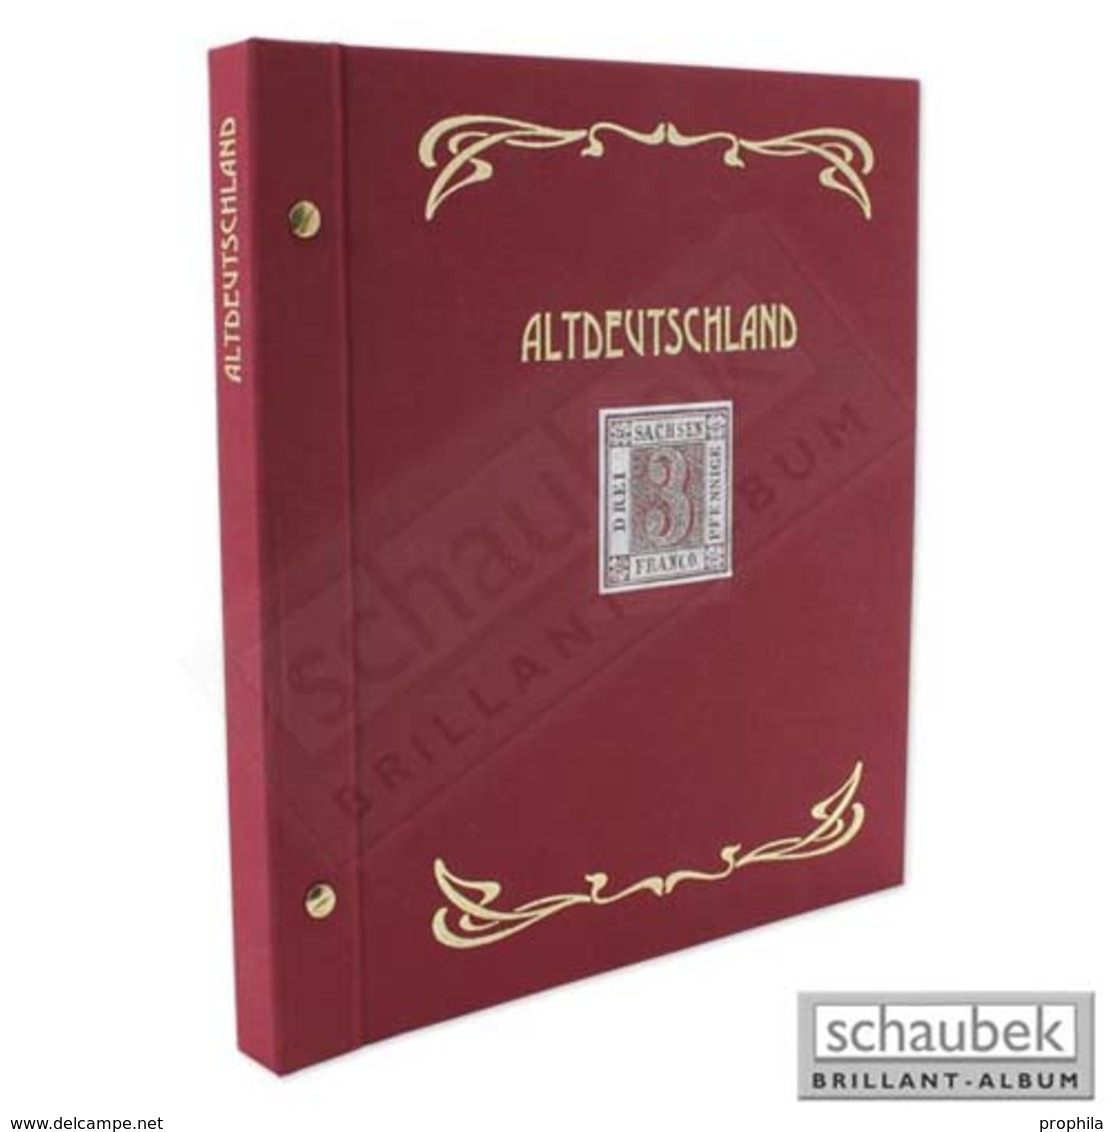 Schaubek Ds0021 Schraubbinder Leinen Schmal Rot, Reprint-Ausführung Altdeutschland - Grand Format, Fond Noir